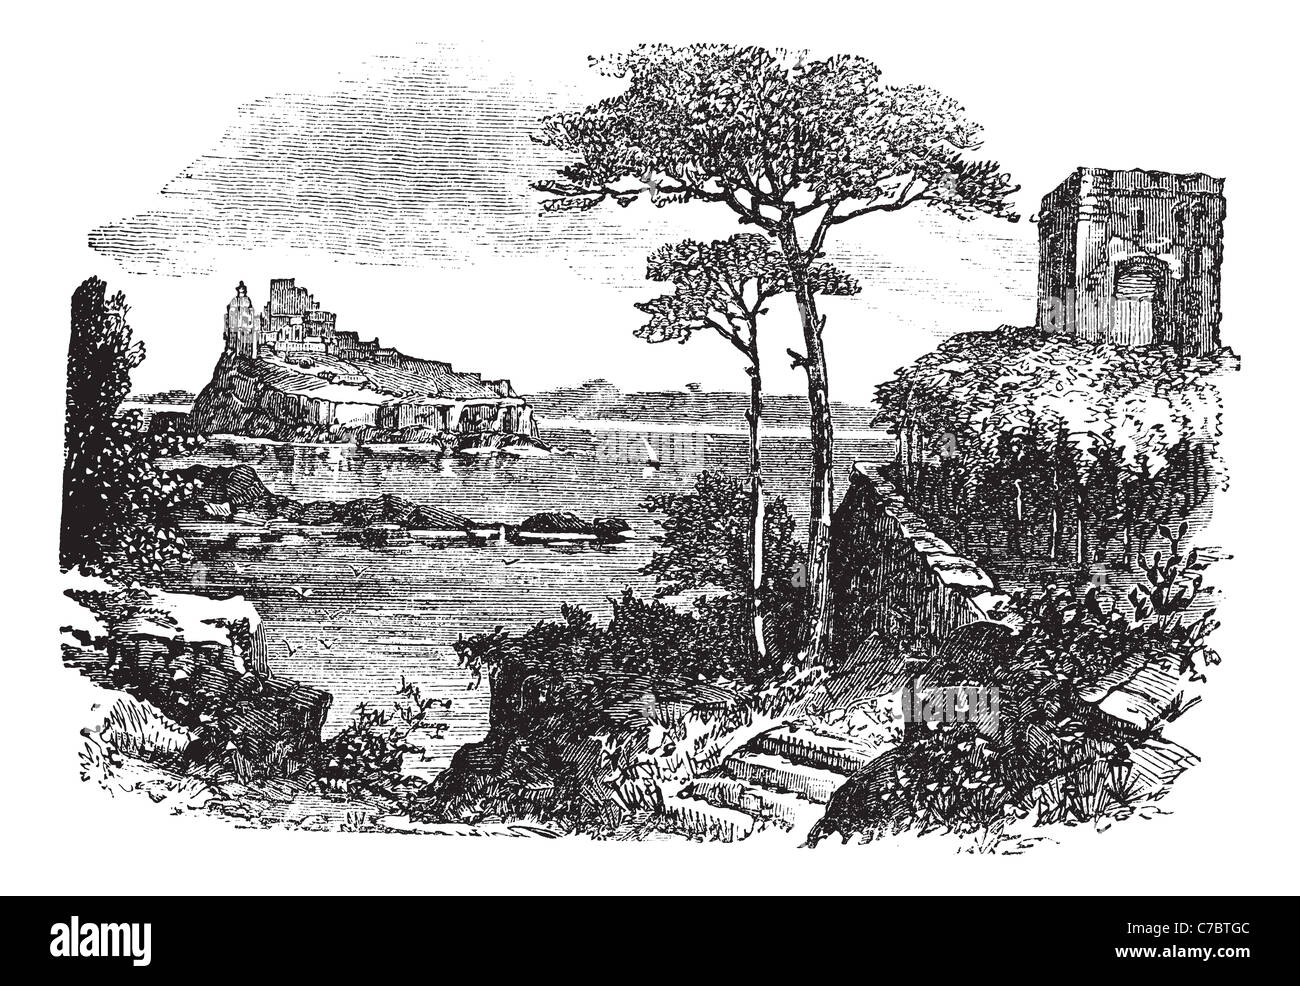 Ischia en Italie, pendant les années 1890, gravure d'époque. Vieille illustration gravée d'Ischia avec château et la mer. Banque D'Images